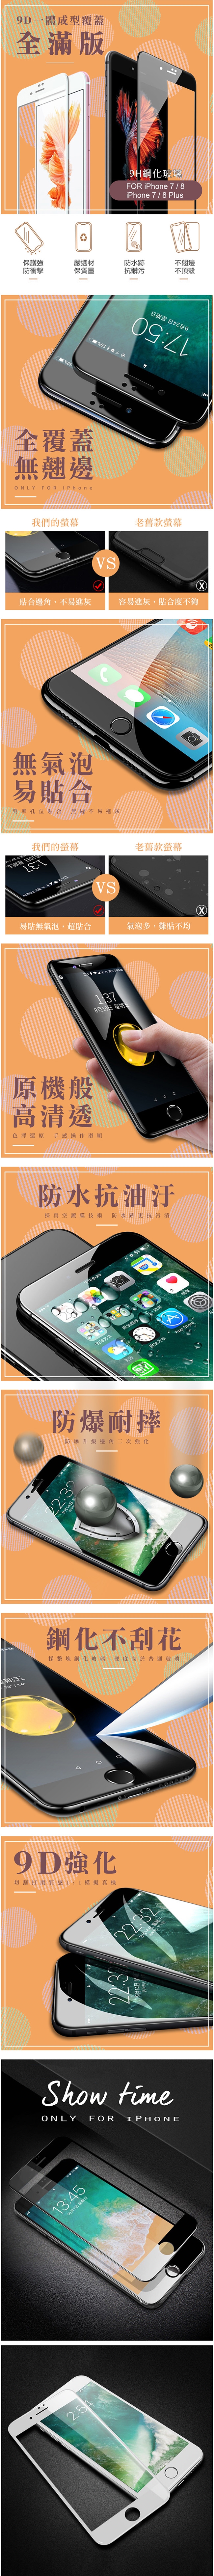 iPhone 7/8 9D 滿版 9H 鋼化玻璃膜 手機螢幕保護貼-超值3入組